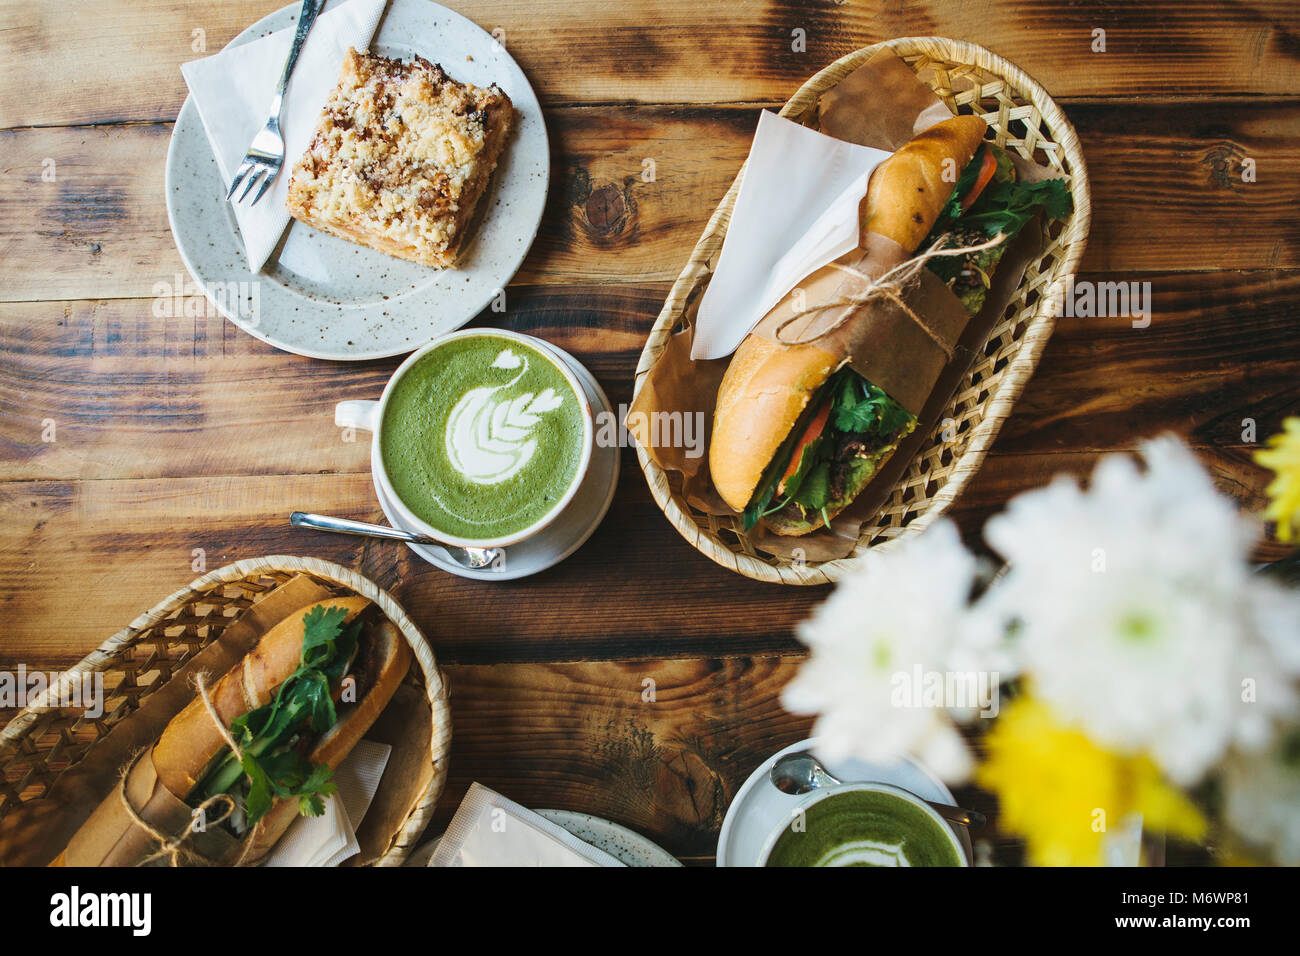 Petit-déjeuner sain dans le restaurant : tasses de thé vert avec du lait appelé Matcha, dessert et des sandwiches de légumes et d'herbes sur la table en bois. Les fleurs sont jaunes à proximité pour décorer la table. Banque D'Images